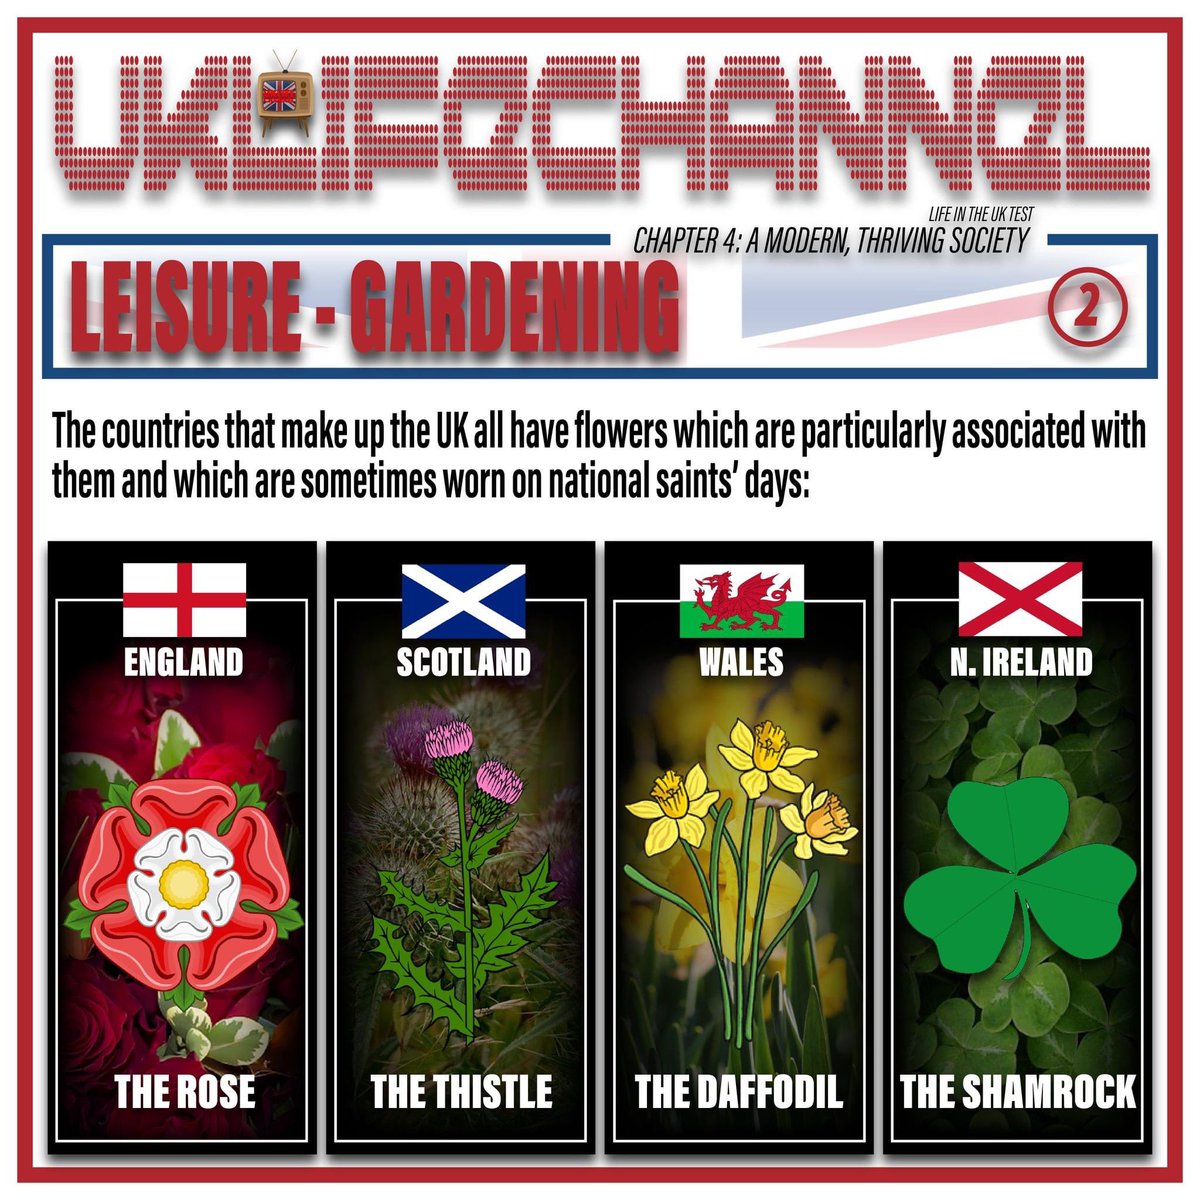 LIFE IN THE UK TEST
What are the four national flowers of the UK?

#uklifechannel #lifeintheuktest #unitedkingdom #uk #Britain #greatbritain #BritishCitizenship #ukleisure #ukgardens #gardening #england #scotland #wales #northernireland #rose #thistel #daffodil #shamrock